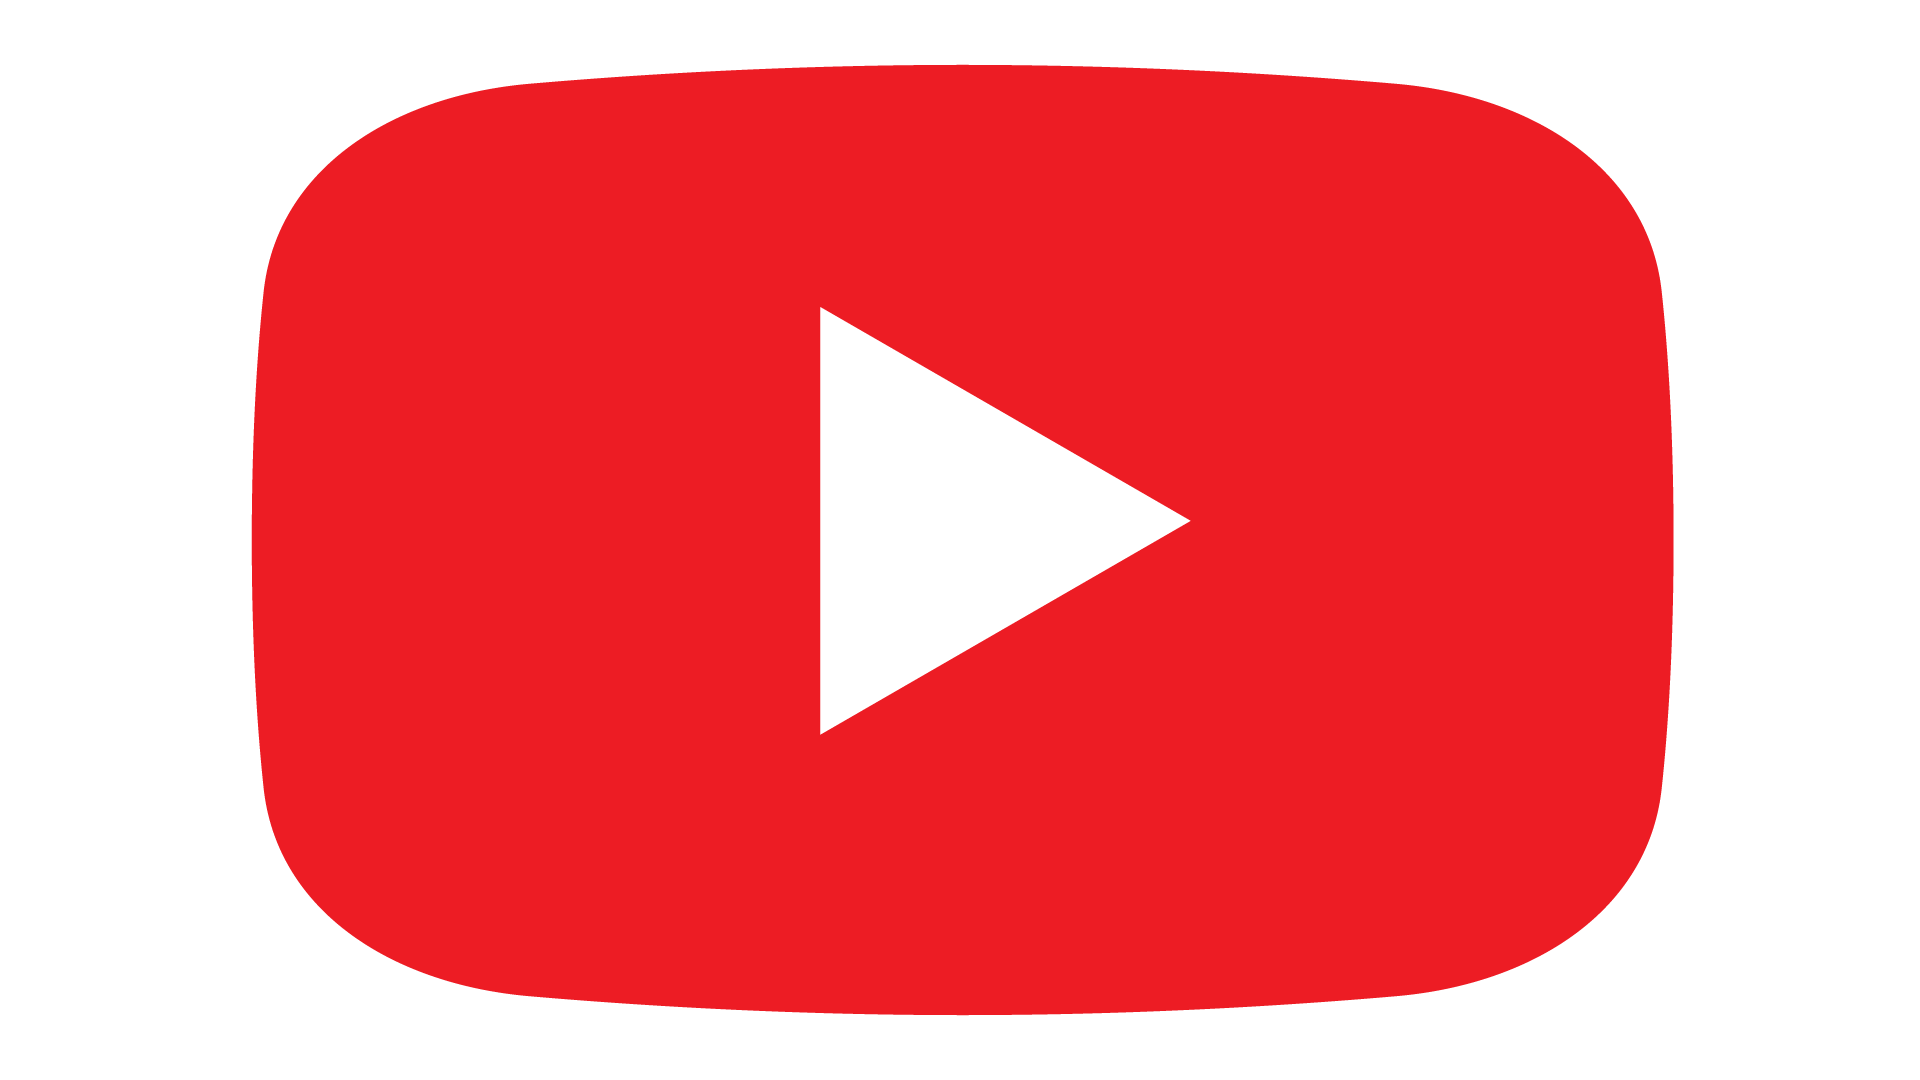 Download Logo Youtube Full HD Vektor Merah dan Hitam - Mas Vian